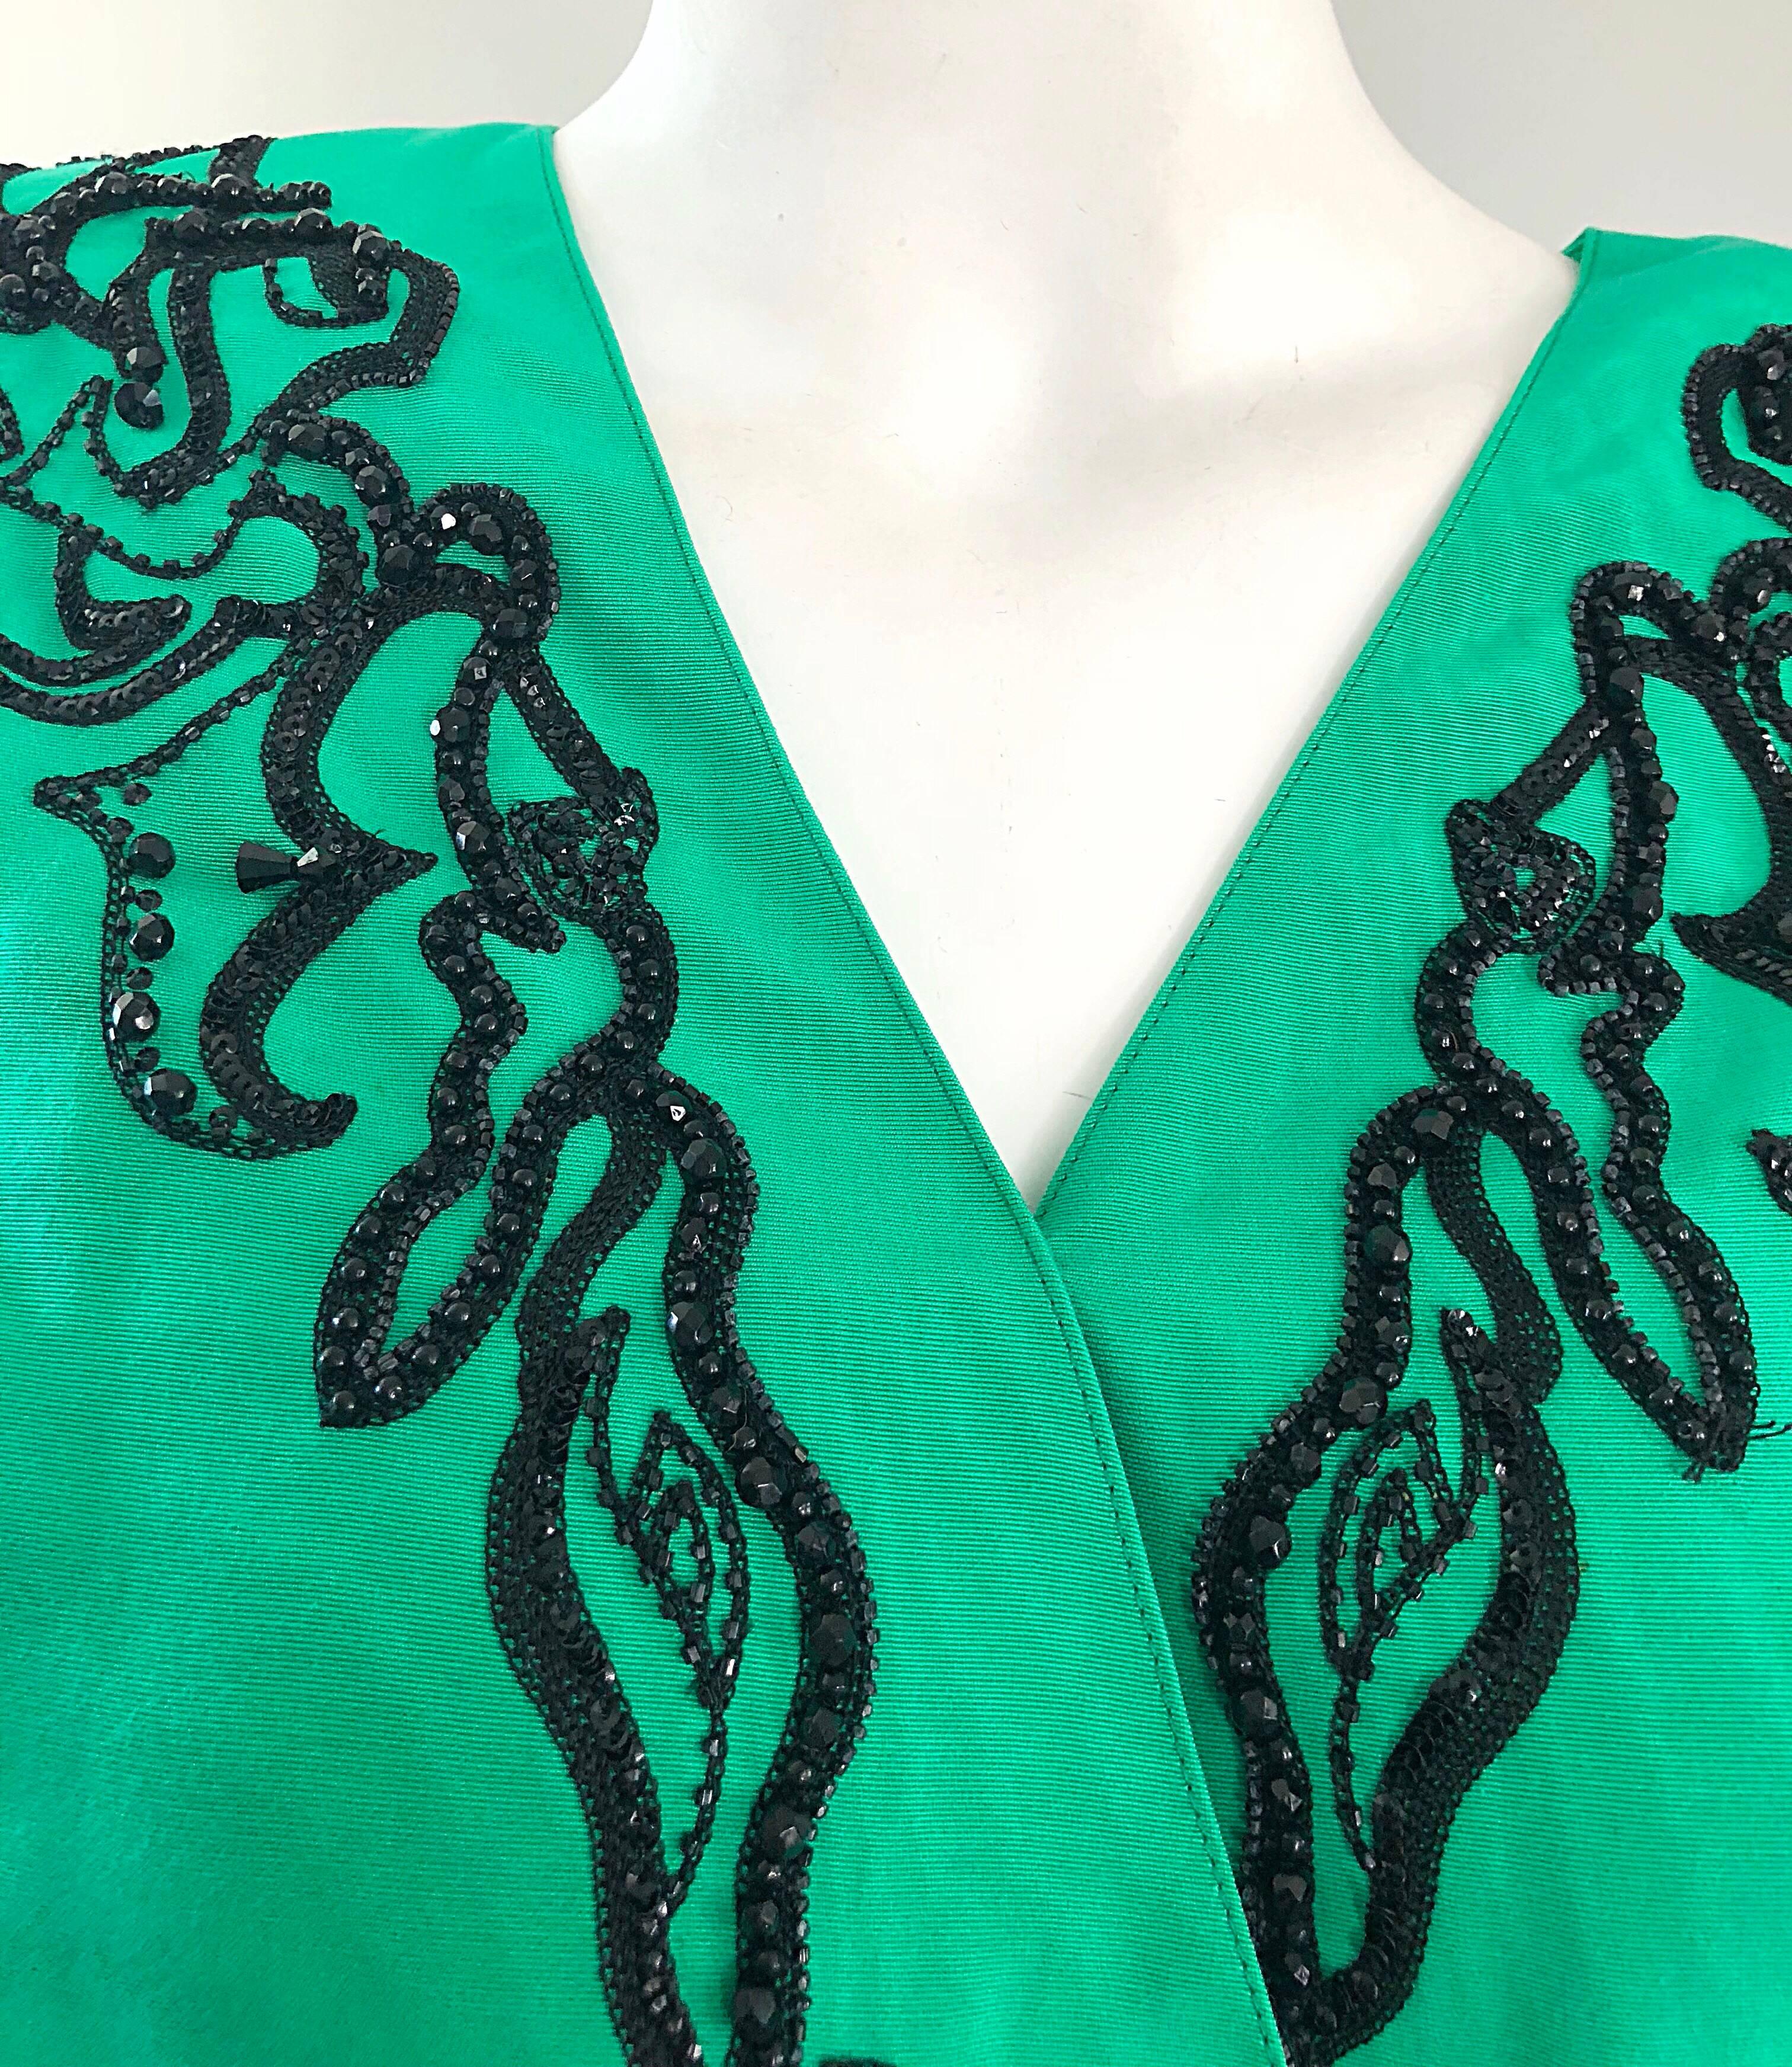 Bleu Emanuel Ungaro - Magnifique veste vintage en soie moirée perlée vert Kelly et noir en vente